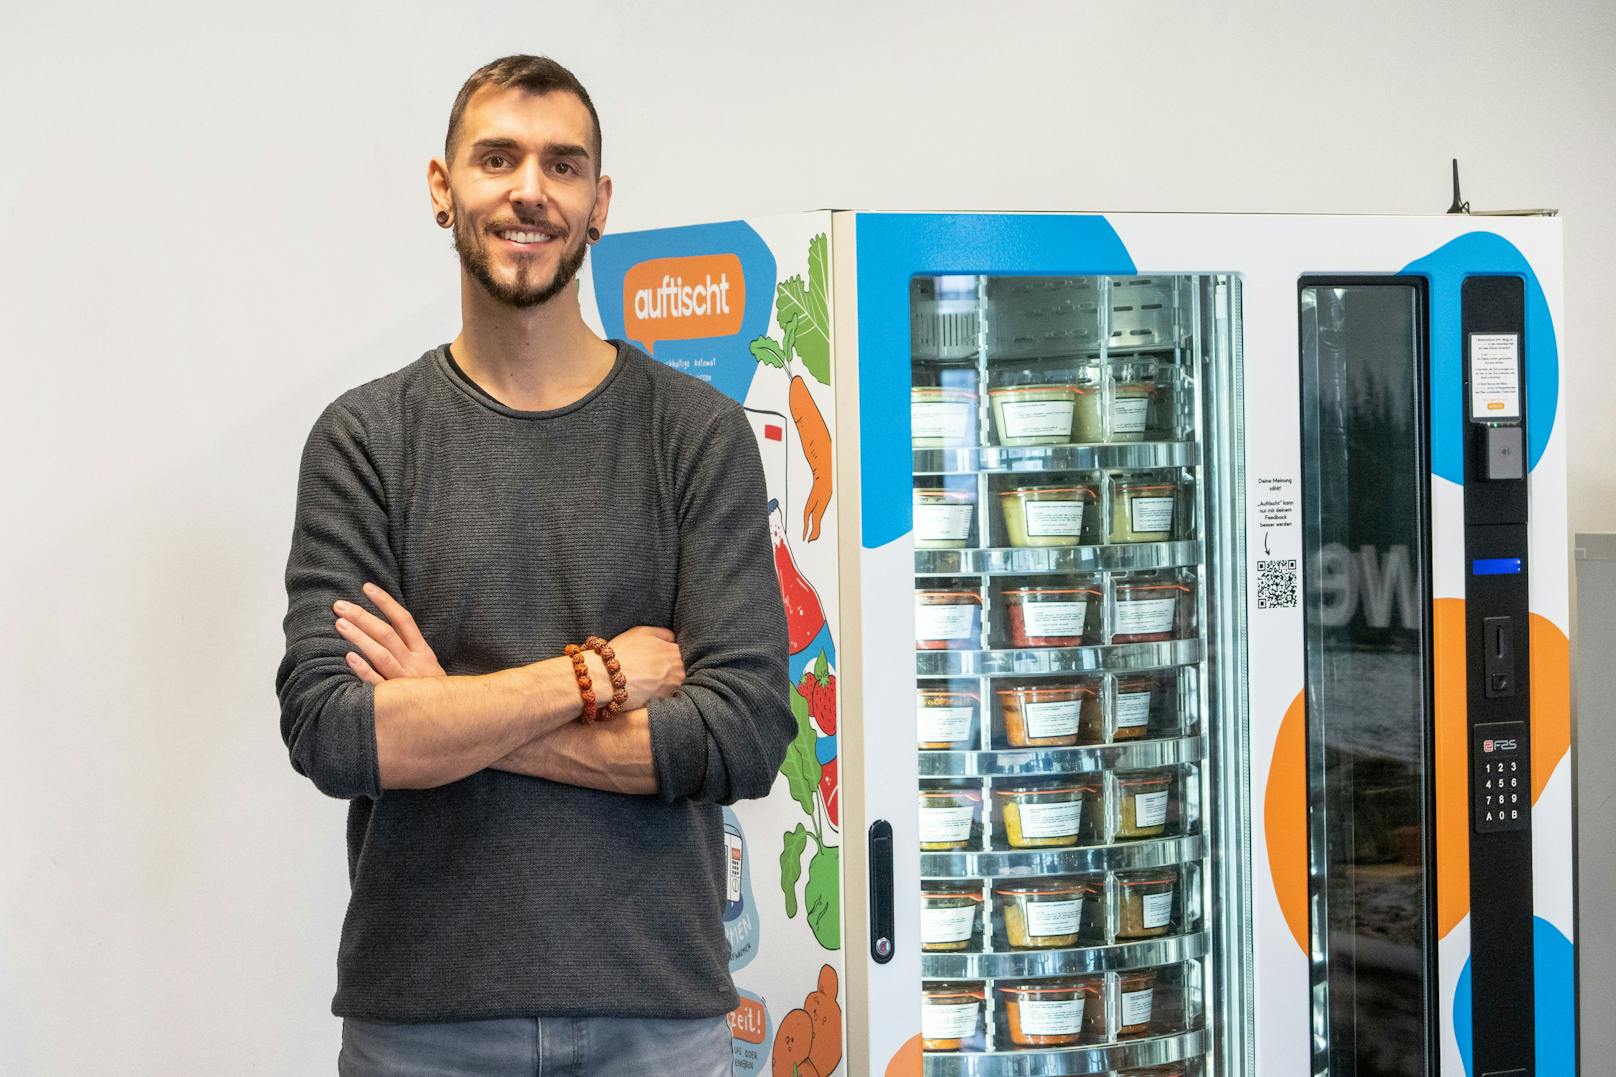 Der Gründer Eric Letourneur steht vor dem Auftischt!-Selbstbedienungsautomaten namens "Gustav" mit BIO-Gerichten, Beilagen, Getränken, Frühstücksartikeln und gesunden Snacks.